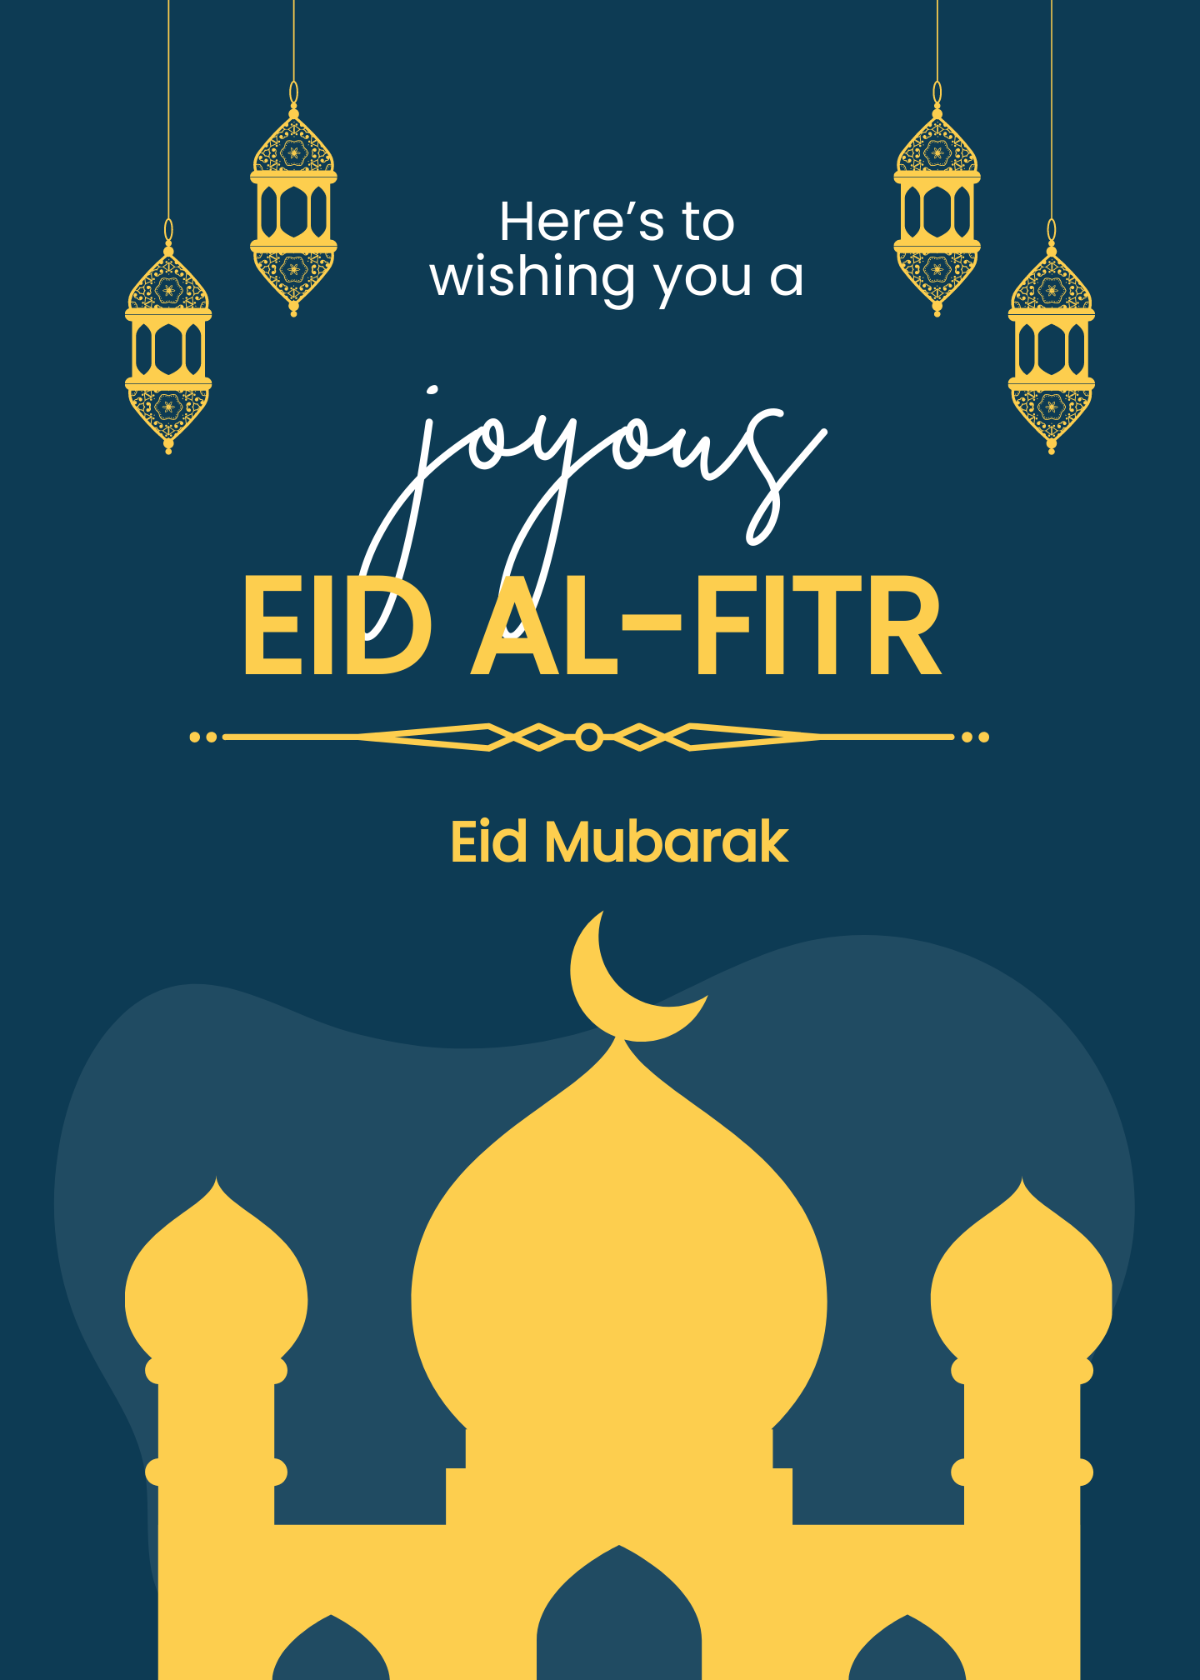 Free Simple Eid al-Fitr Card Template